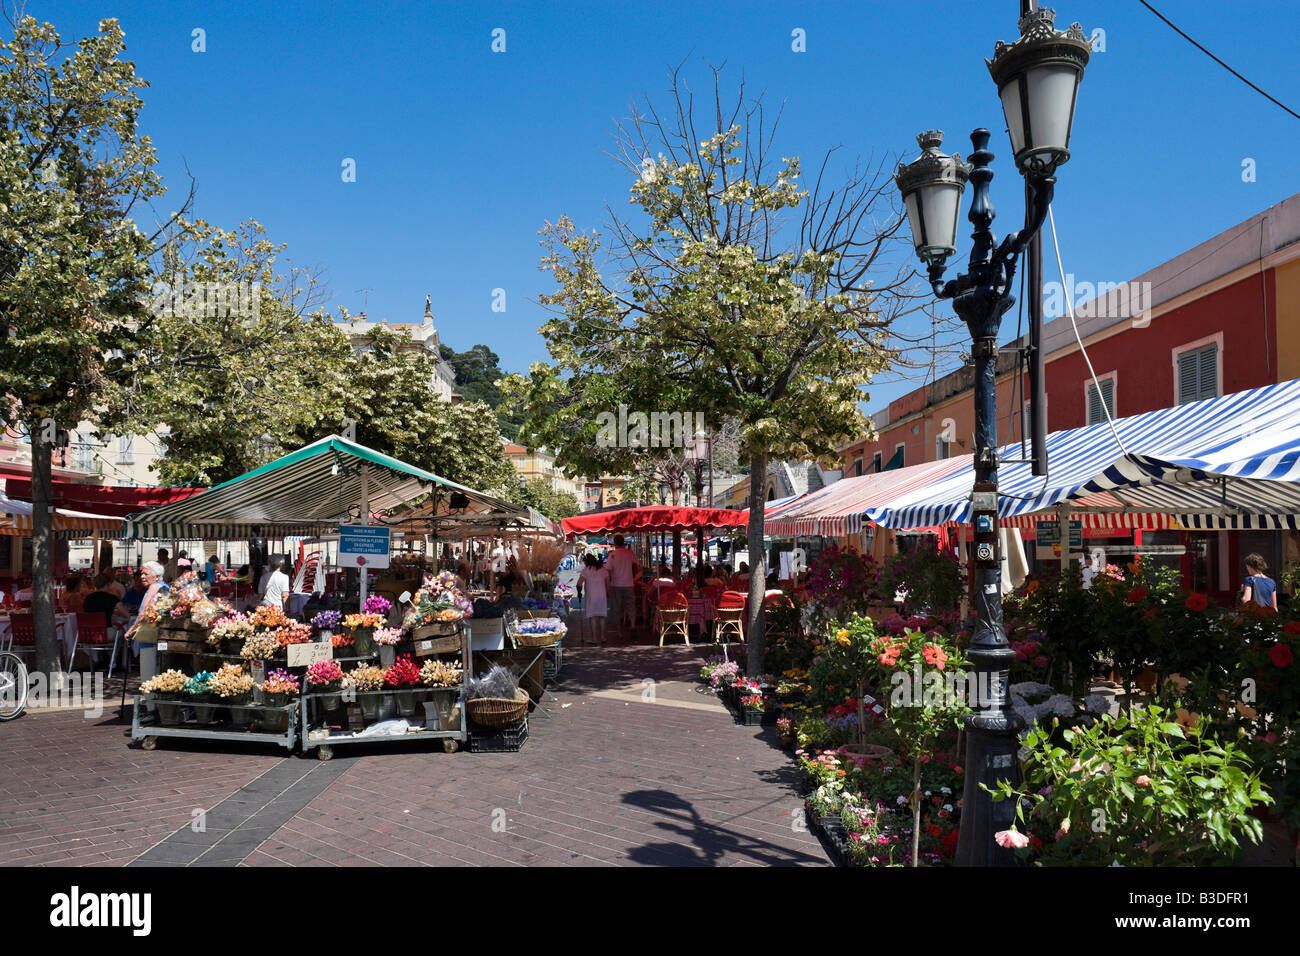 Les échoppes de fleurs le Marché aux Fleurs, le Cours Saleya dans la vieille ville (Vieux nice), Nice, Côte d'Azur, d'Azur, France Banque D'Images